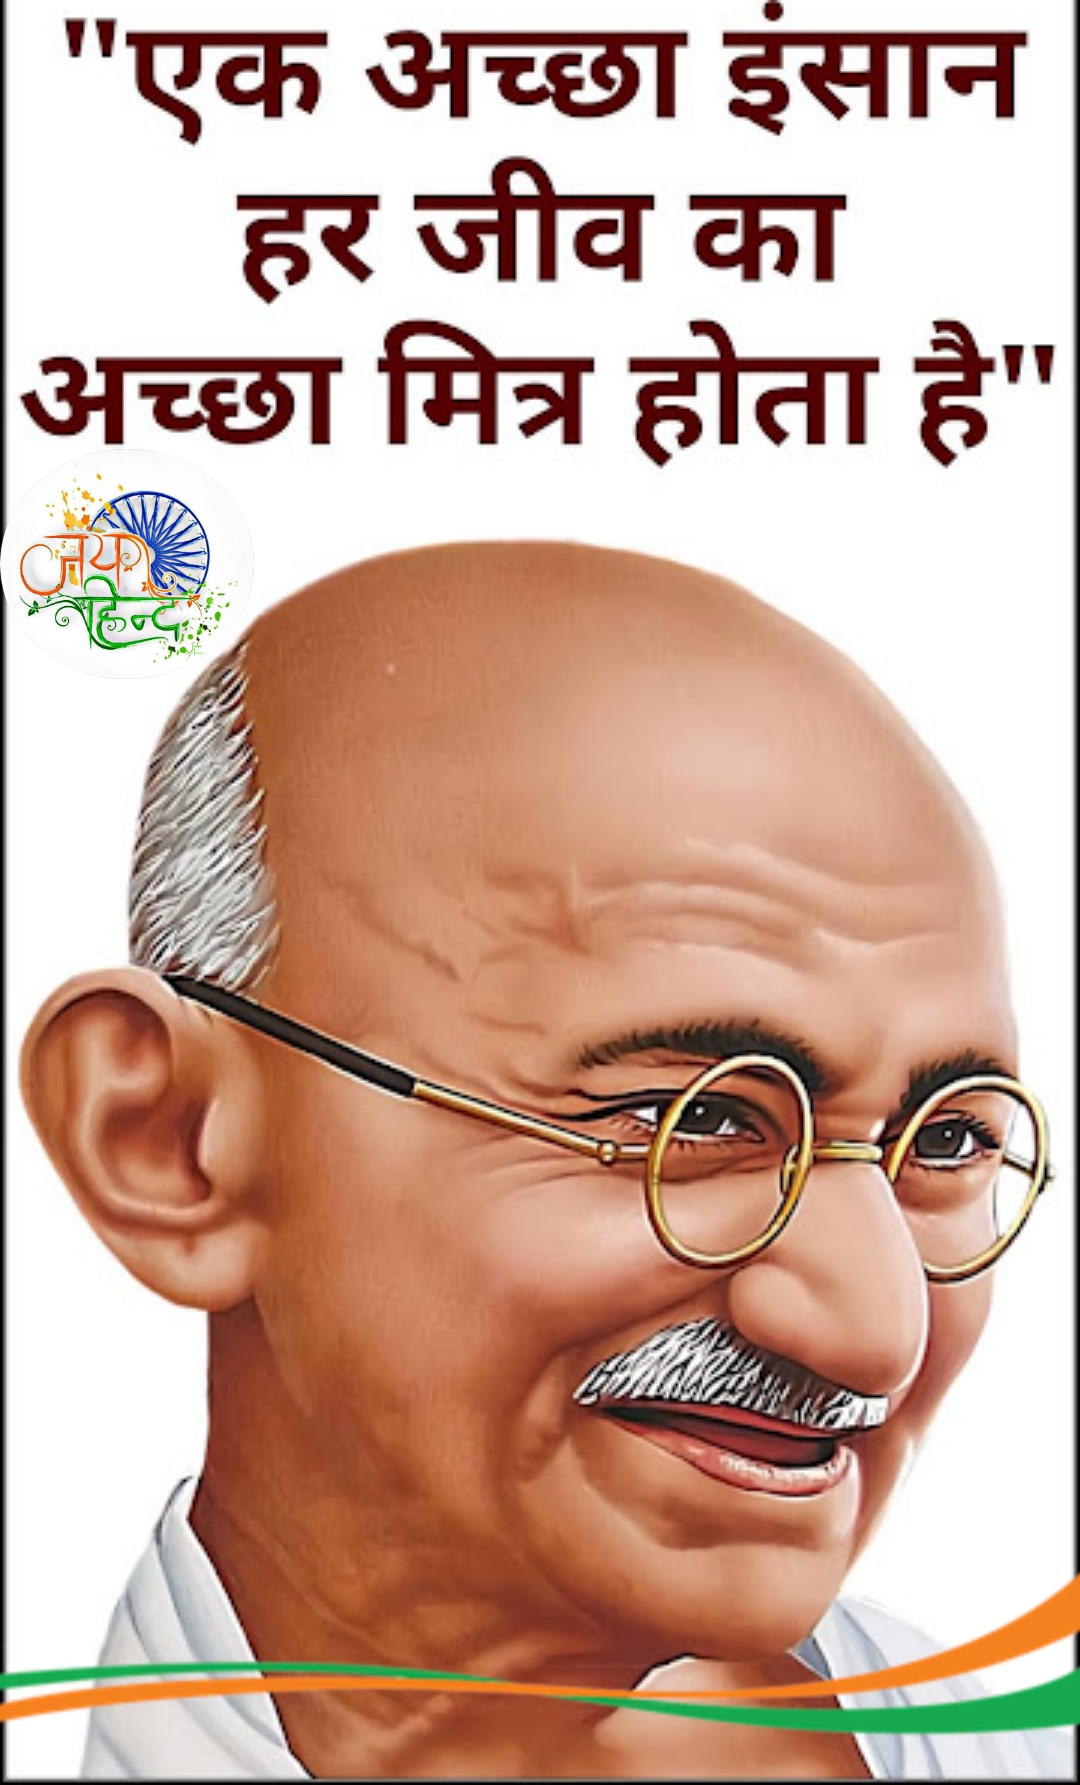 Mahatma Gandhi quotes in Hindi images-  Quotes in hindi by Mahatma gandhi-  Quotes images in Hindi-